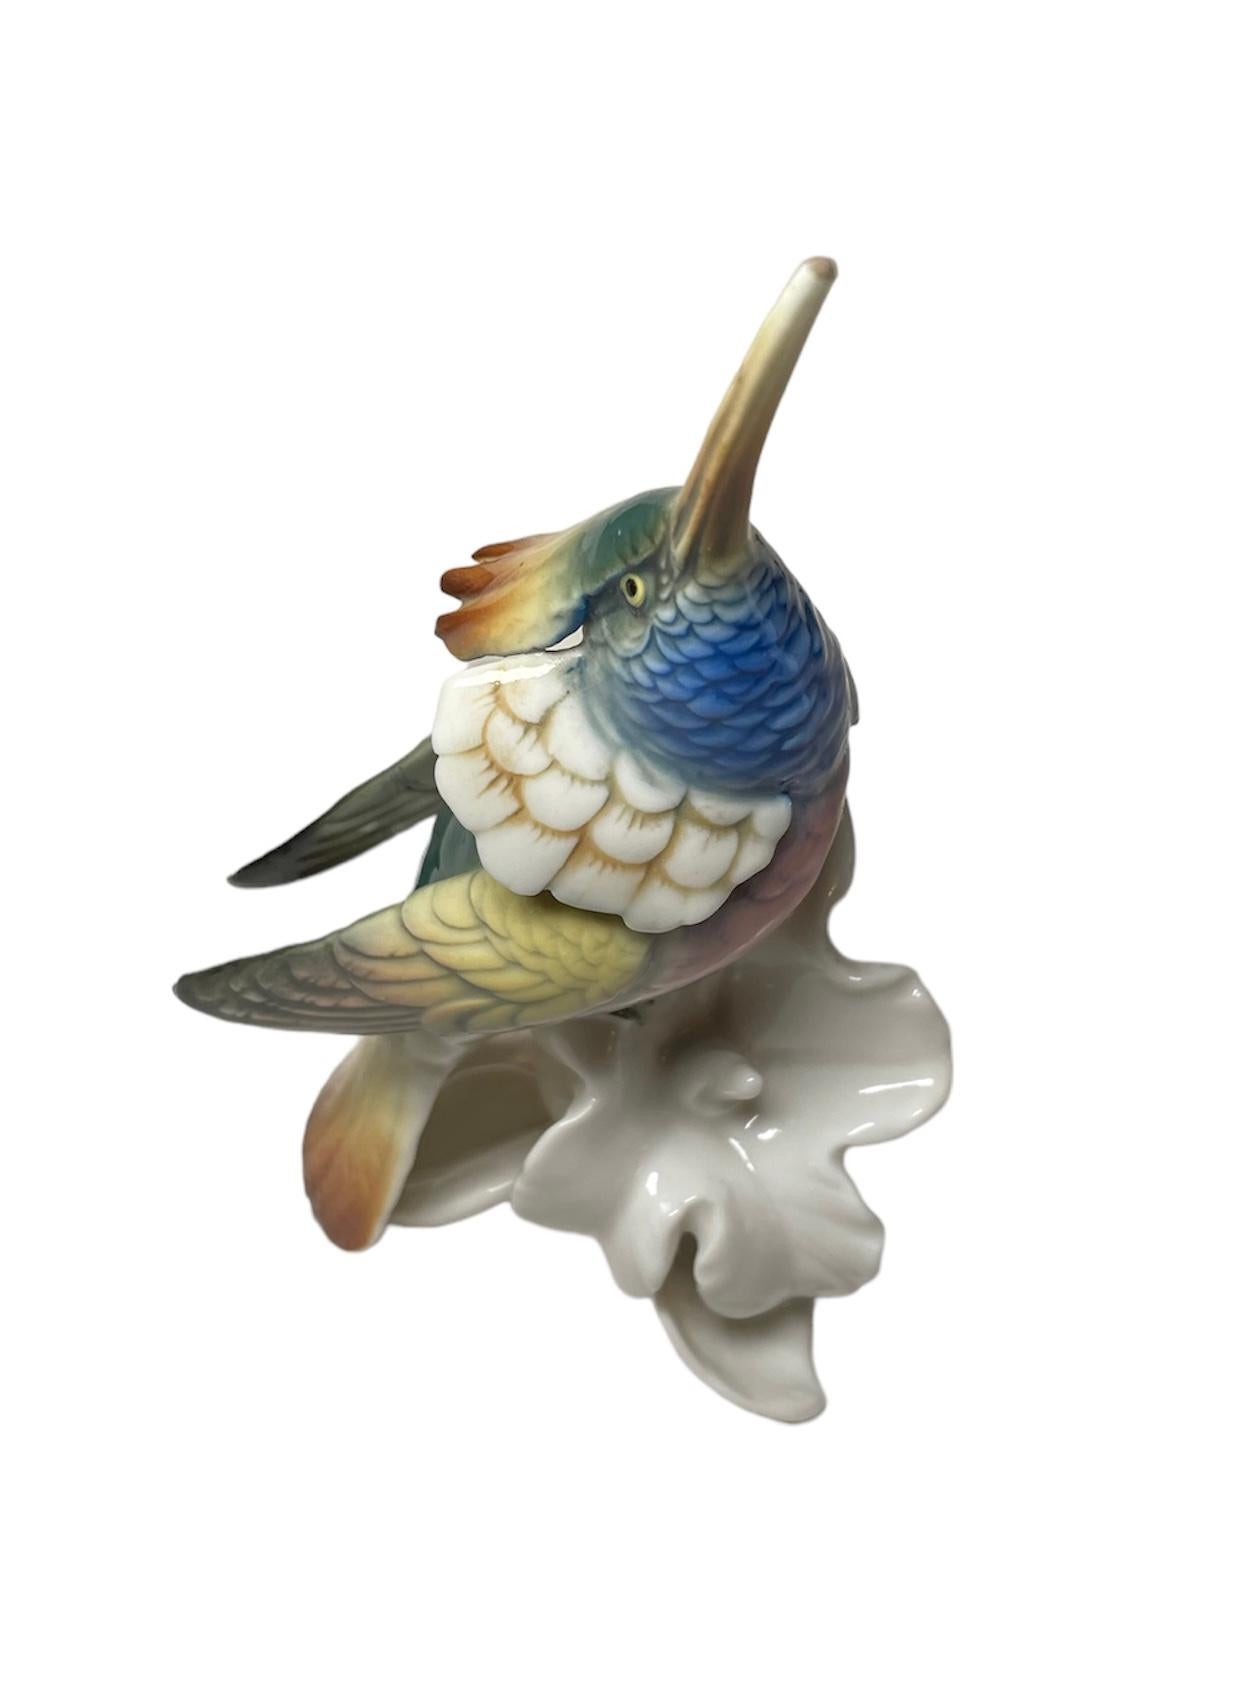 German Karl Ens Porcelain Factory Hummingbird Figurine